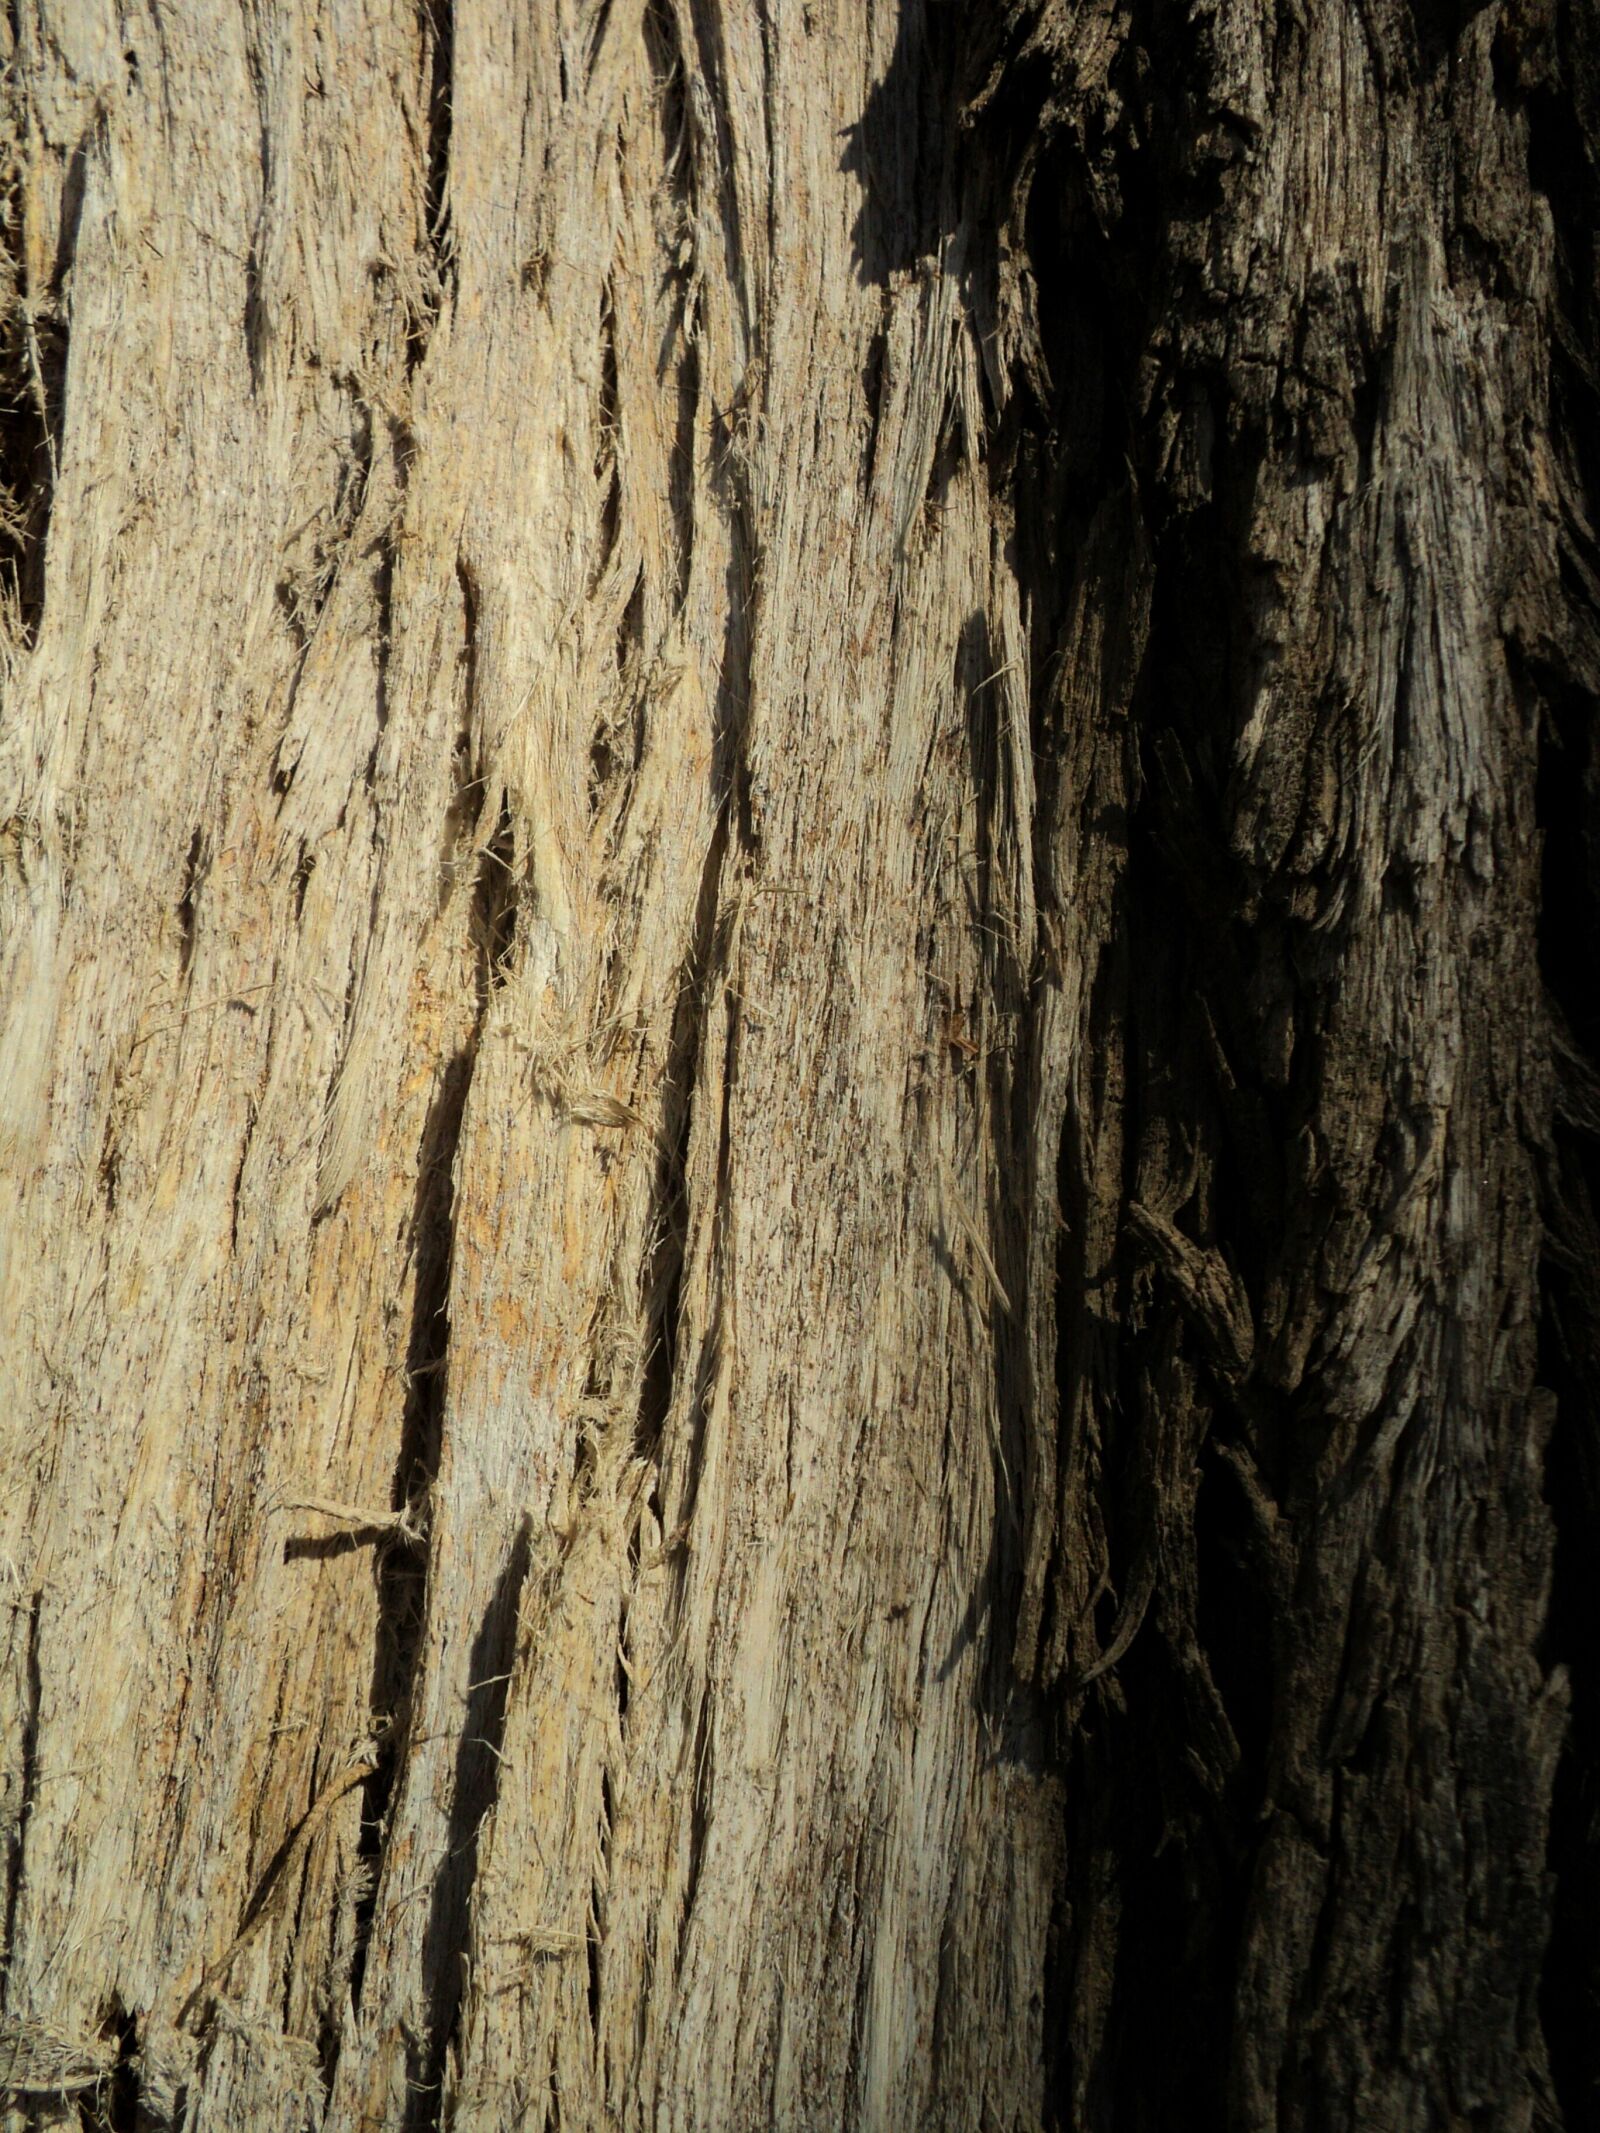 Sony DSC-S2000 sample photo. Tree, tree trunk, bark photography